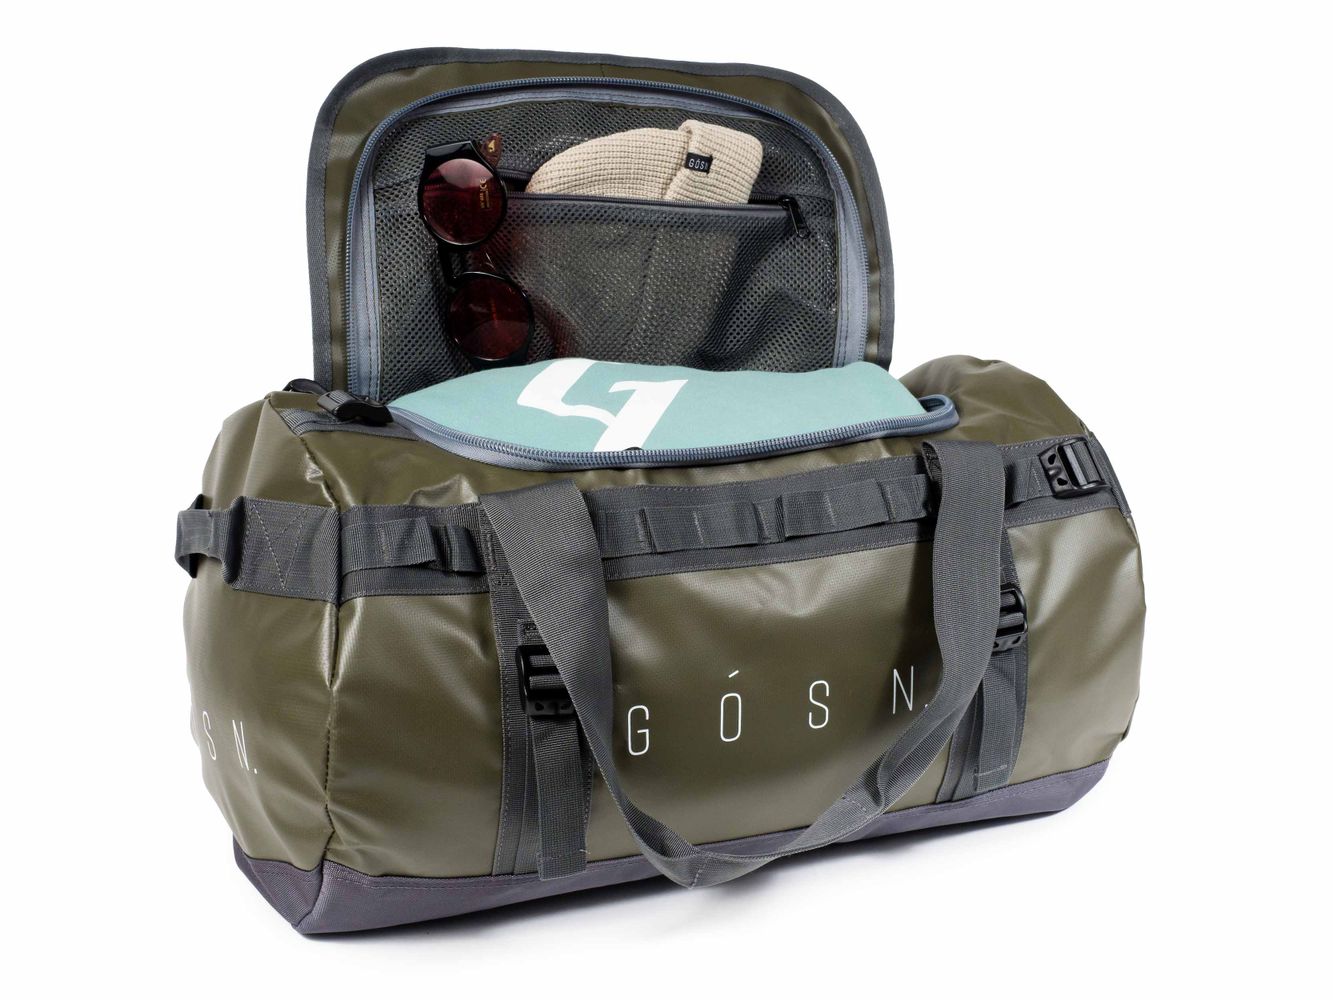 42L Travel Duffel Bag (Olive)